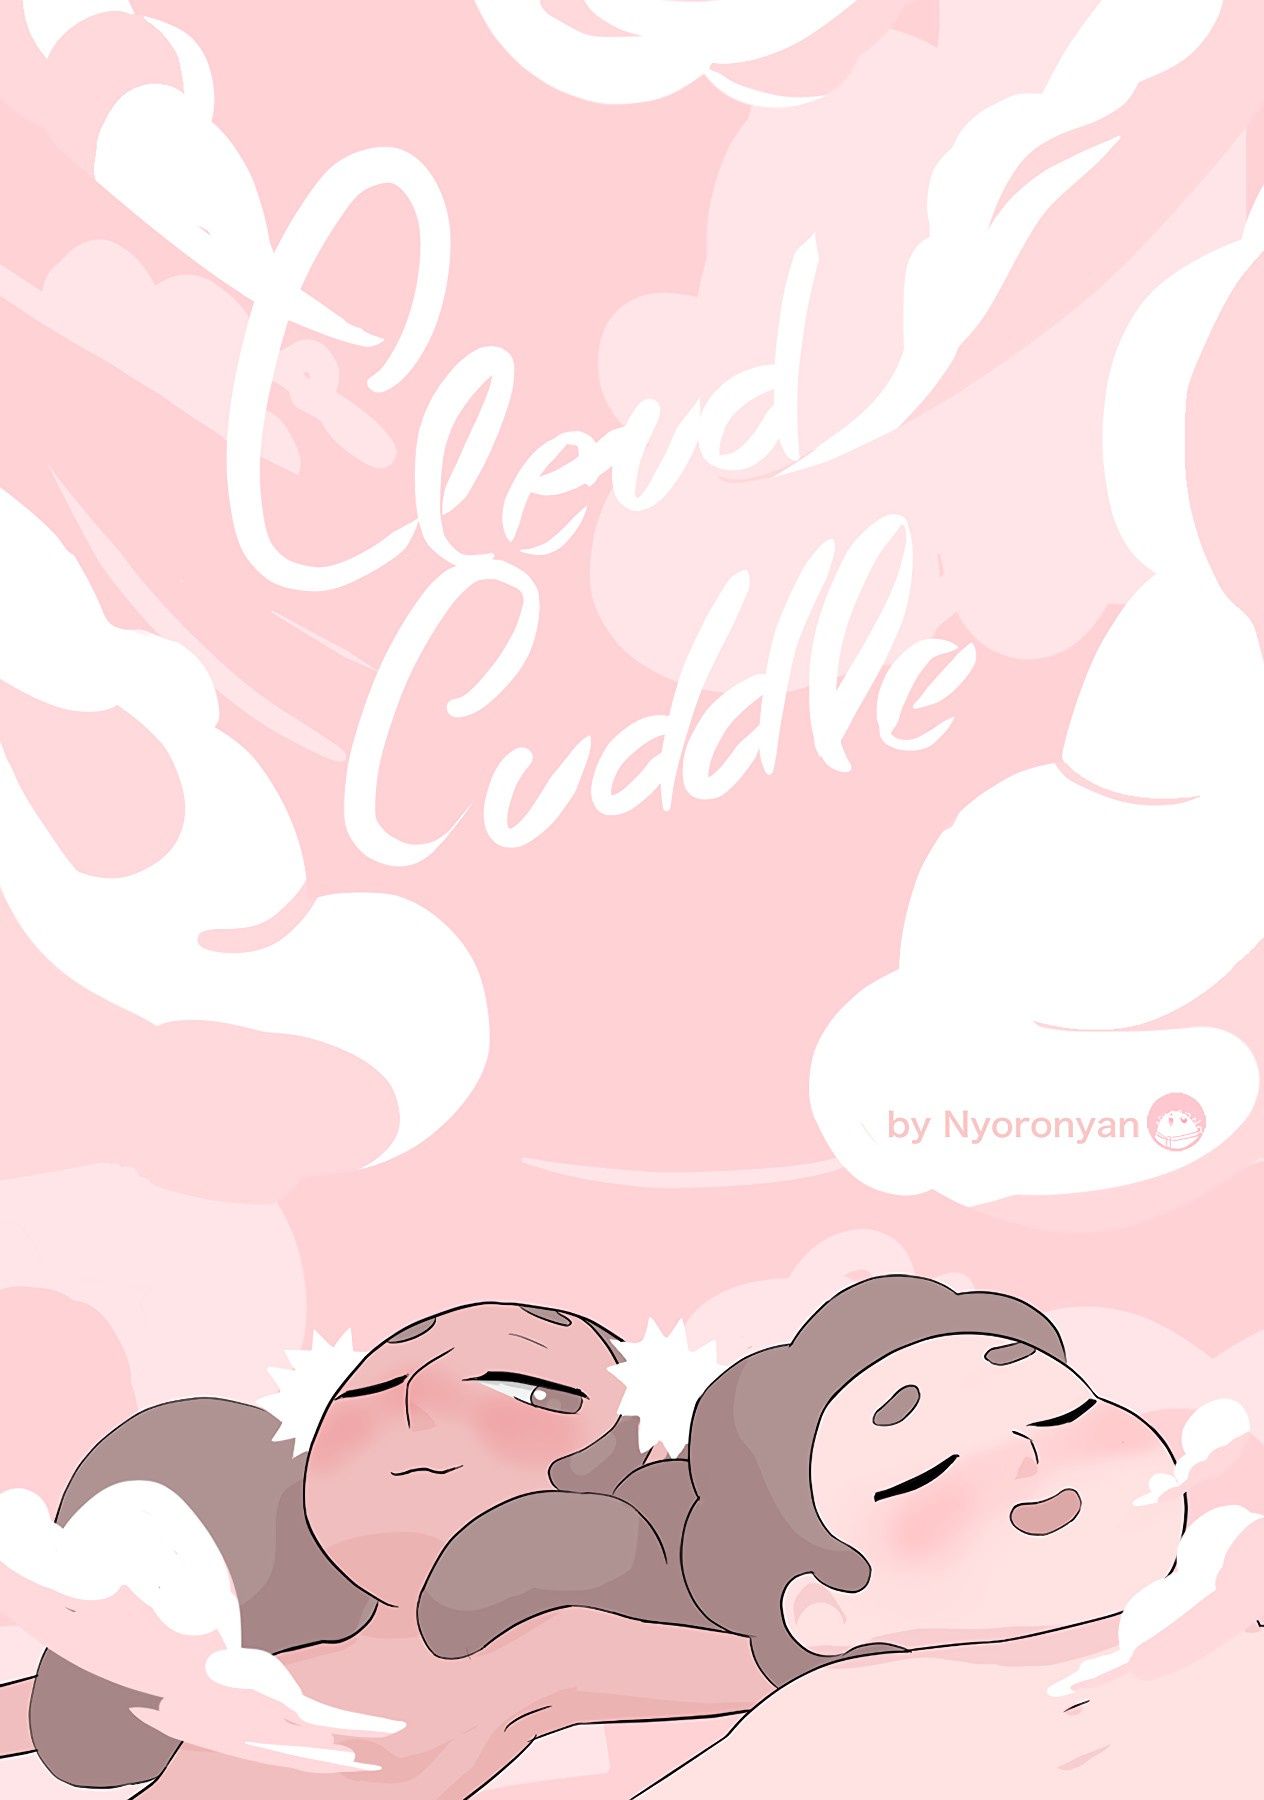 Come cuddle